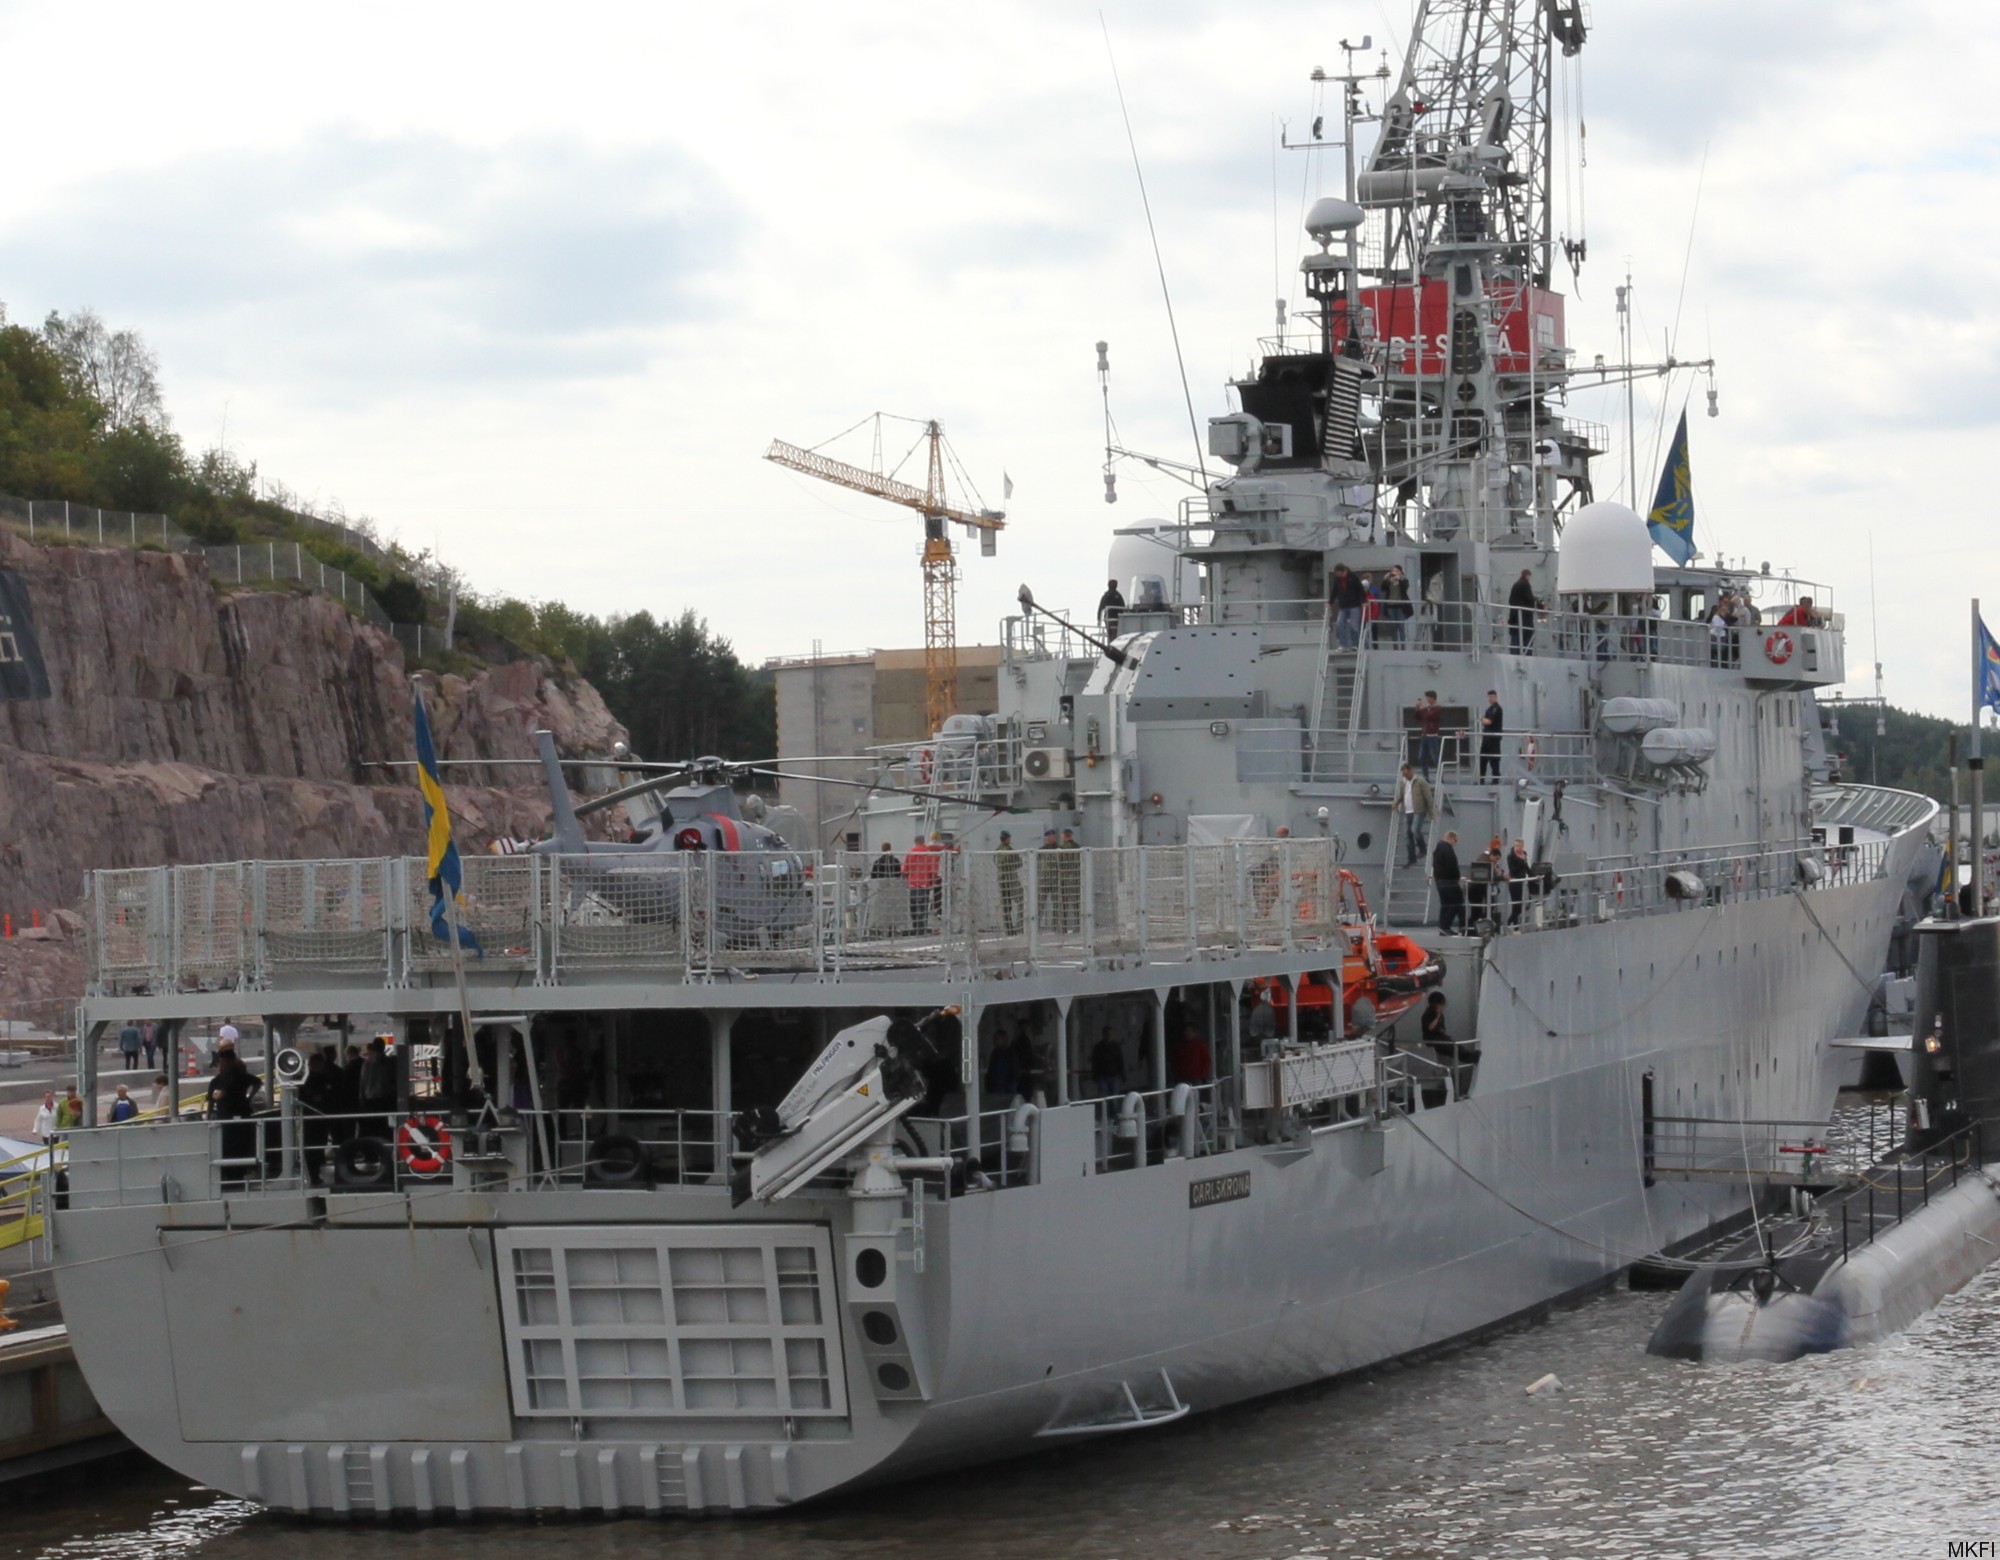 p04 hswms carlskrona hms ocean patrol vessel opv swedish navy svenska marinen försvarsmakten 04